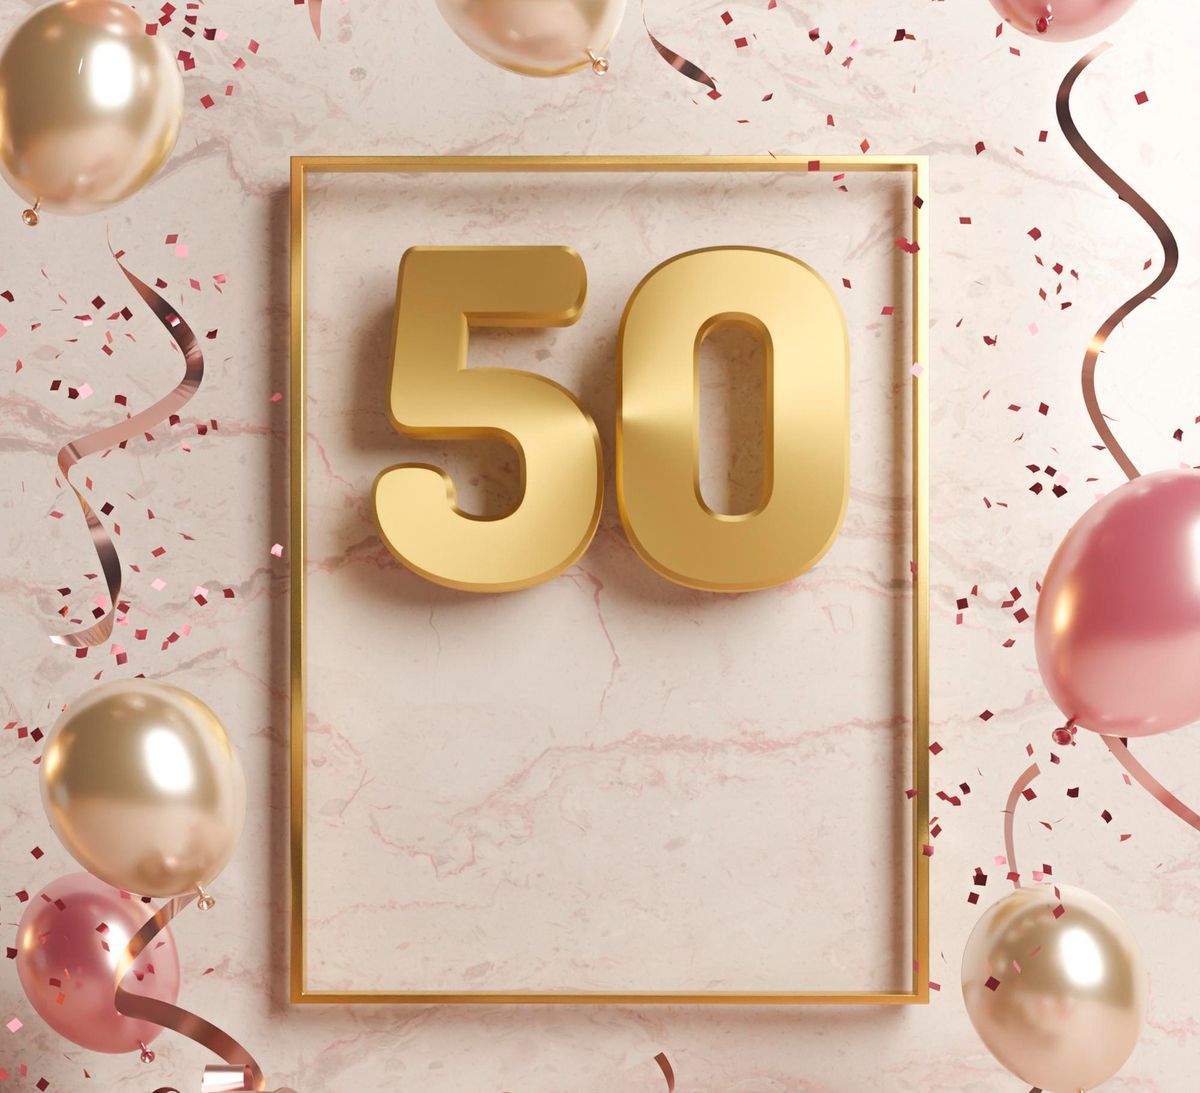 50 anni - Frasi originali e divertenti per auguri di compleanno -  Aforisticamente